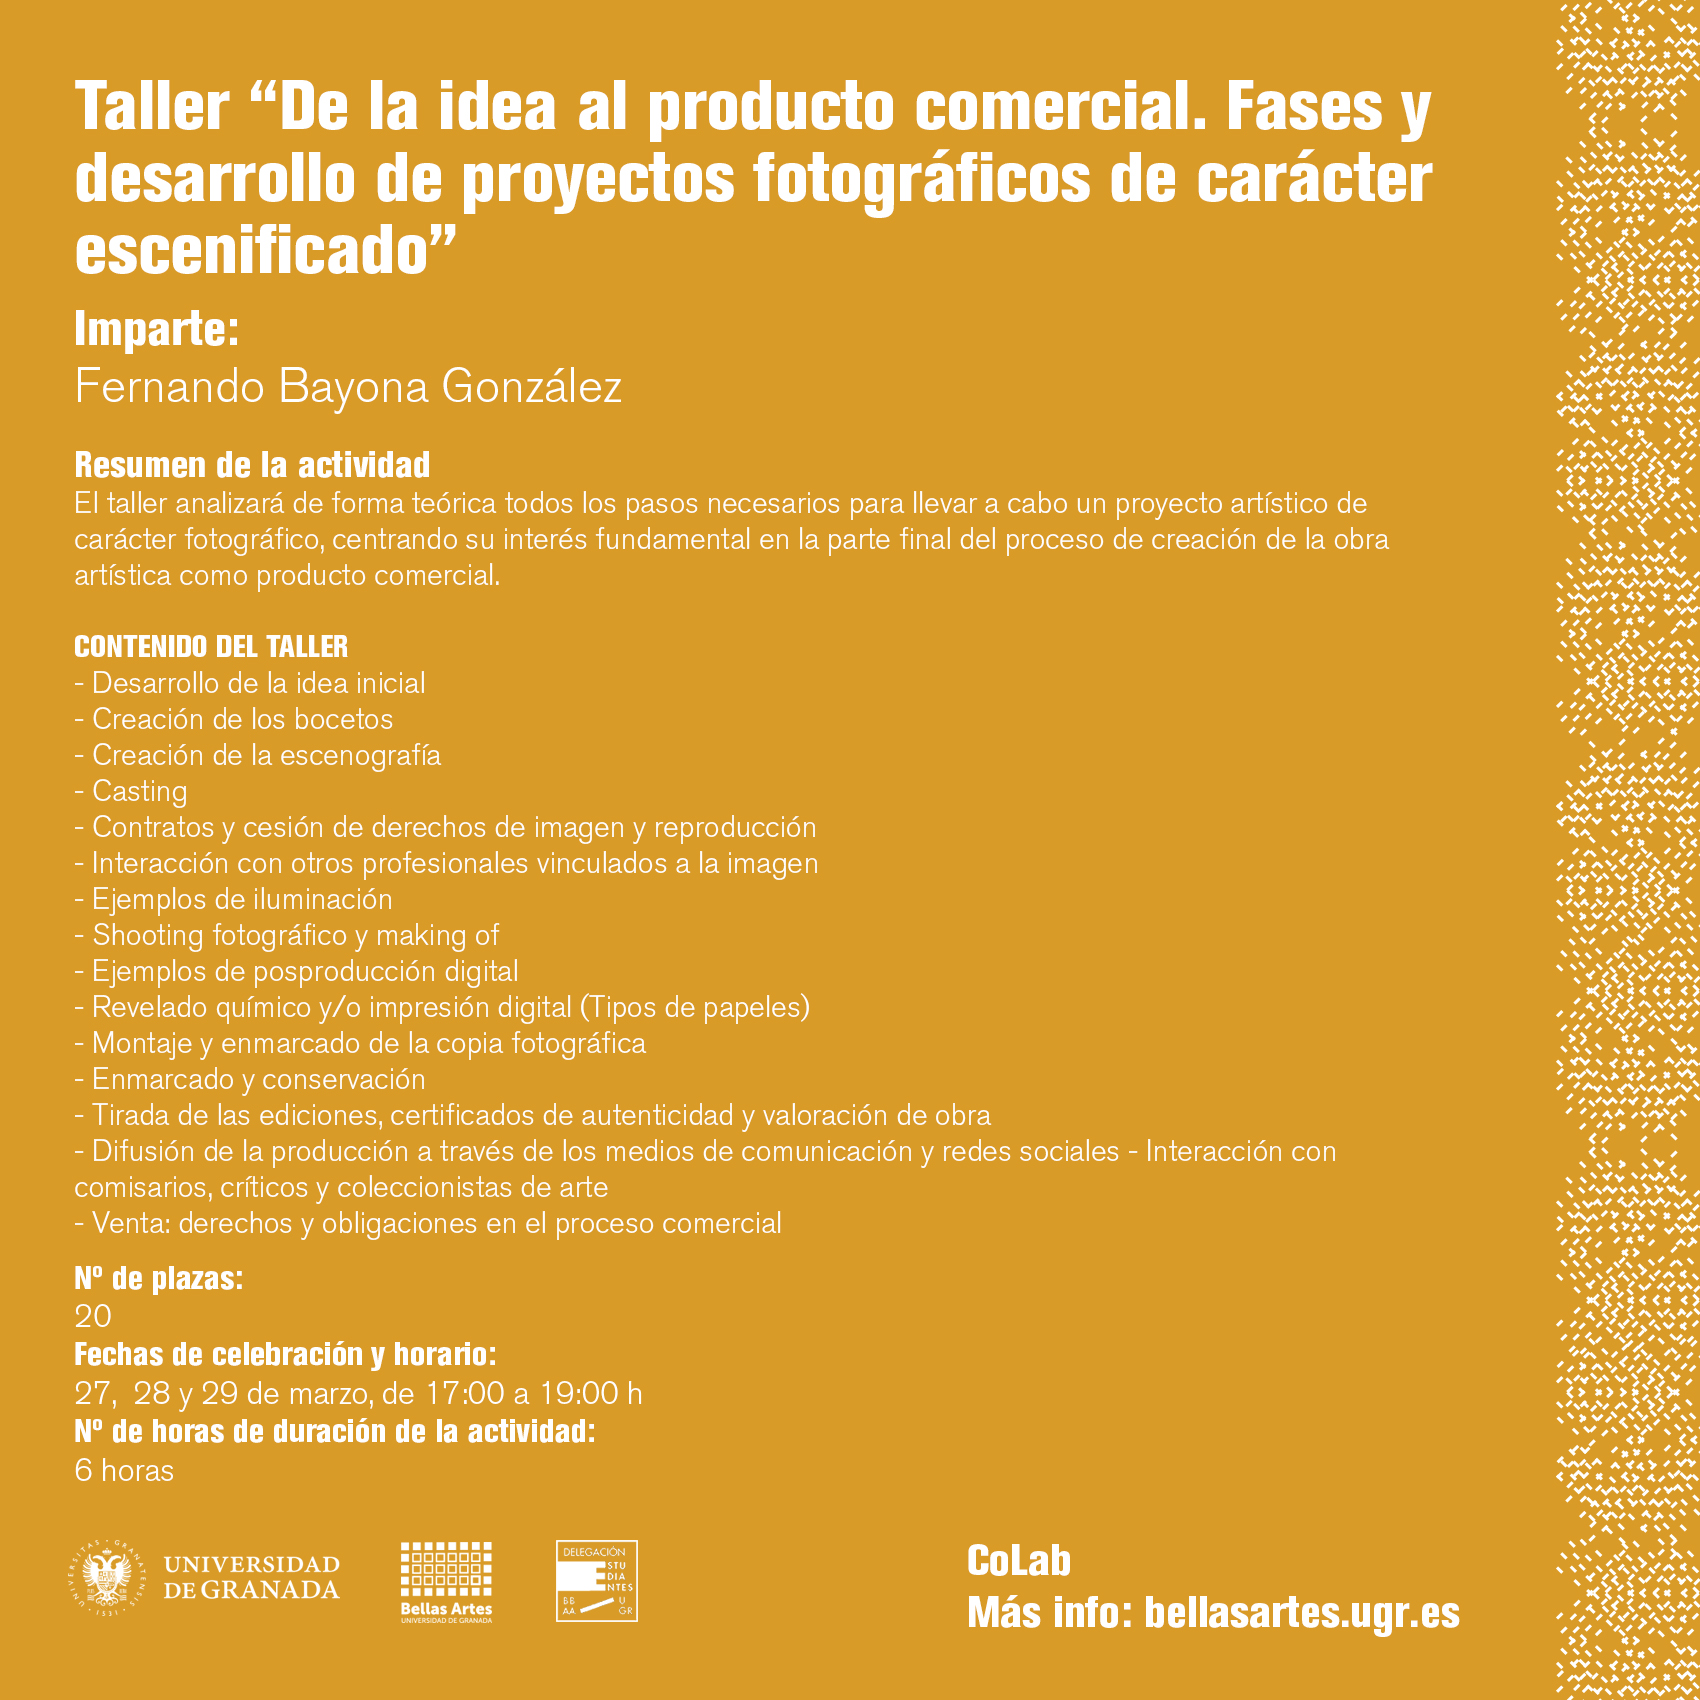 Imagen de portada de Taller “COLAB: De la idea al producto comercial”. Imparte Fernando Bayona